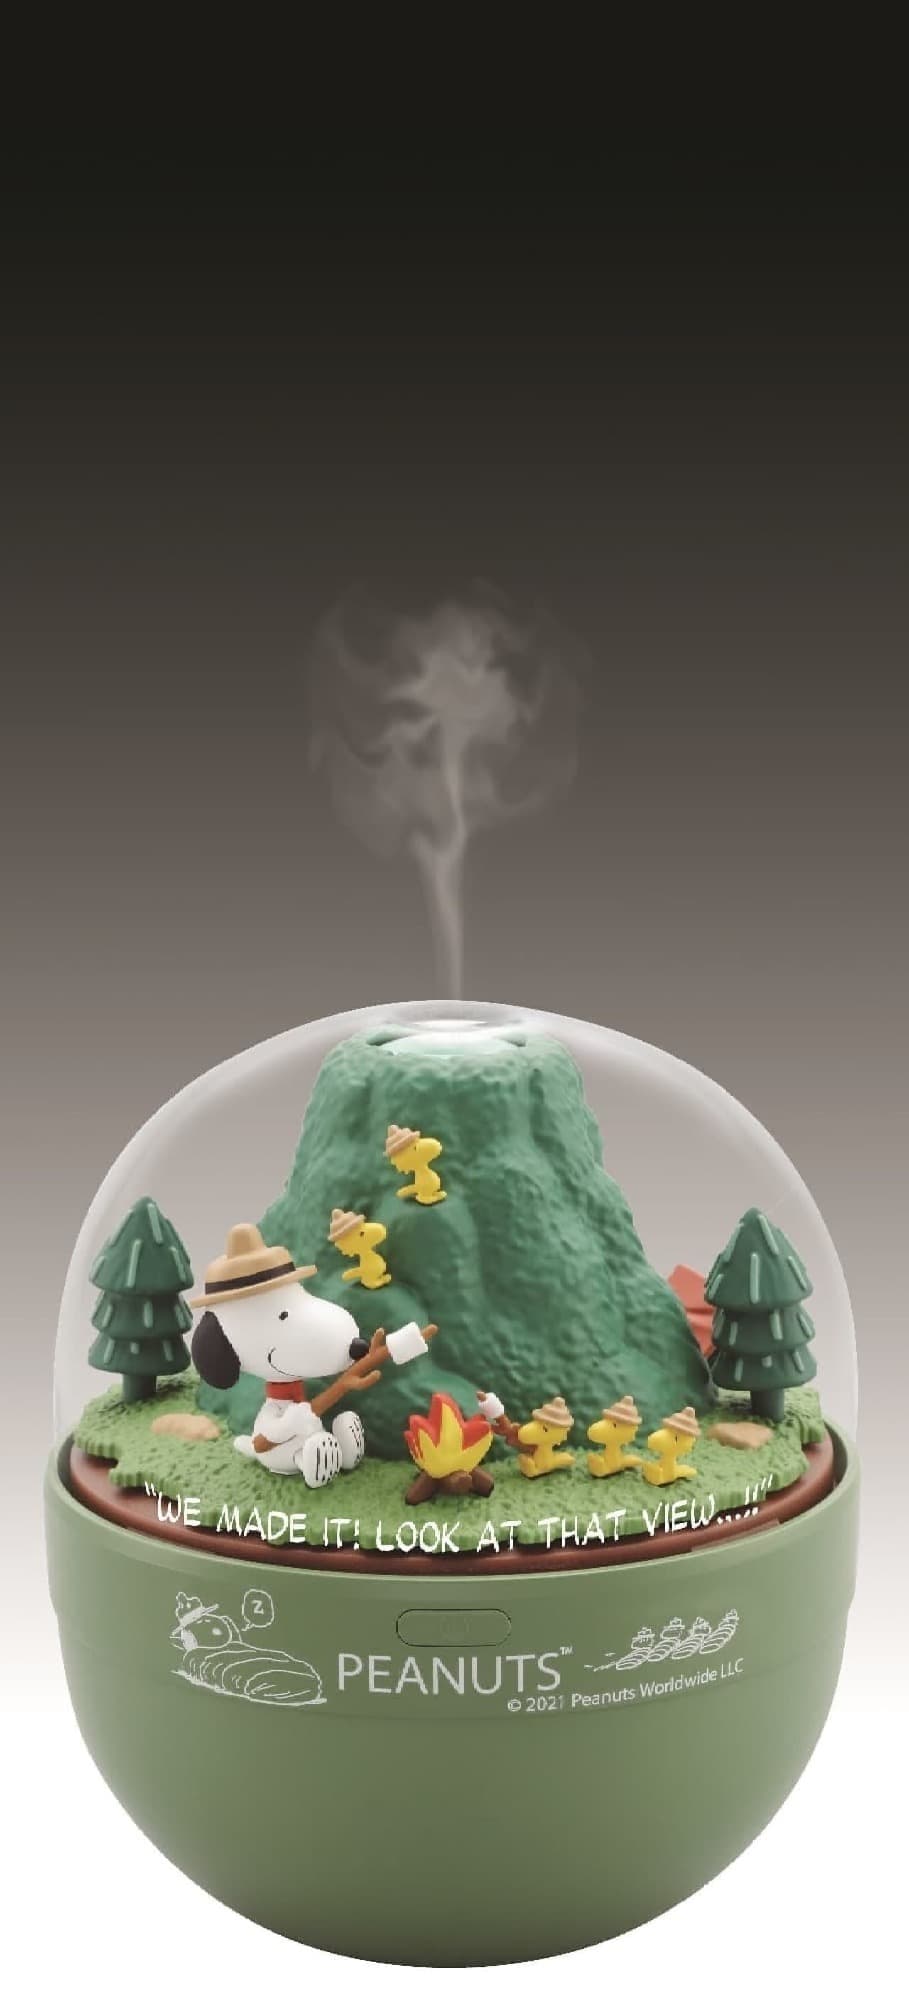 「スヌーピー ビーグル・スカウト加湿器」発売 -- 焼きマシュマロを楽しむ可愛いフィギュア